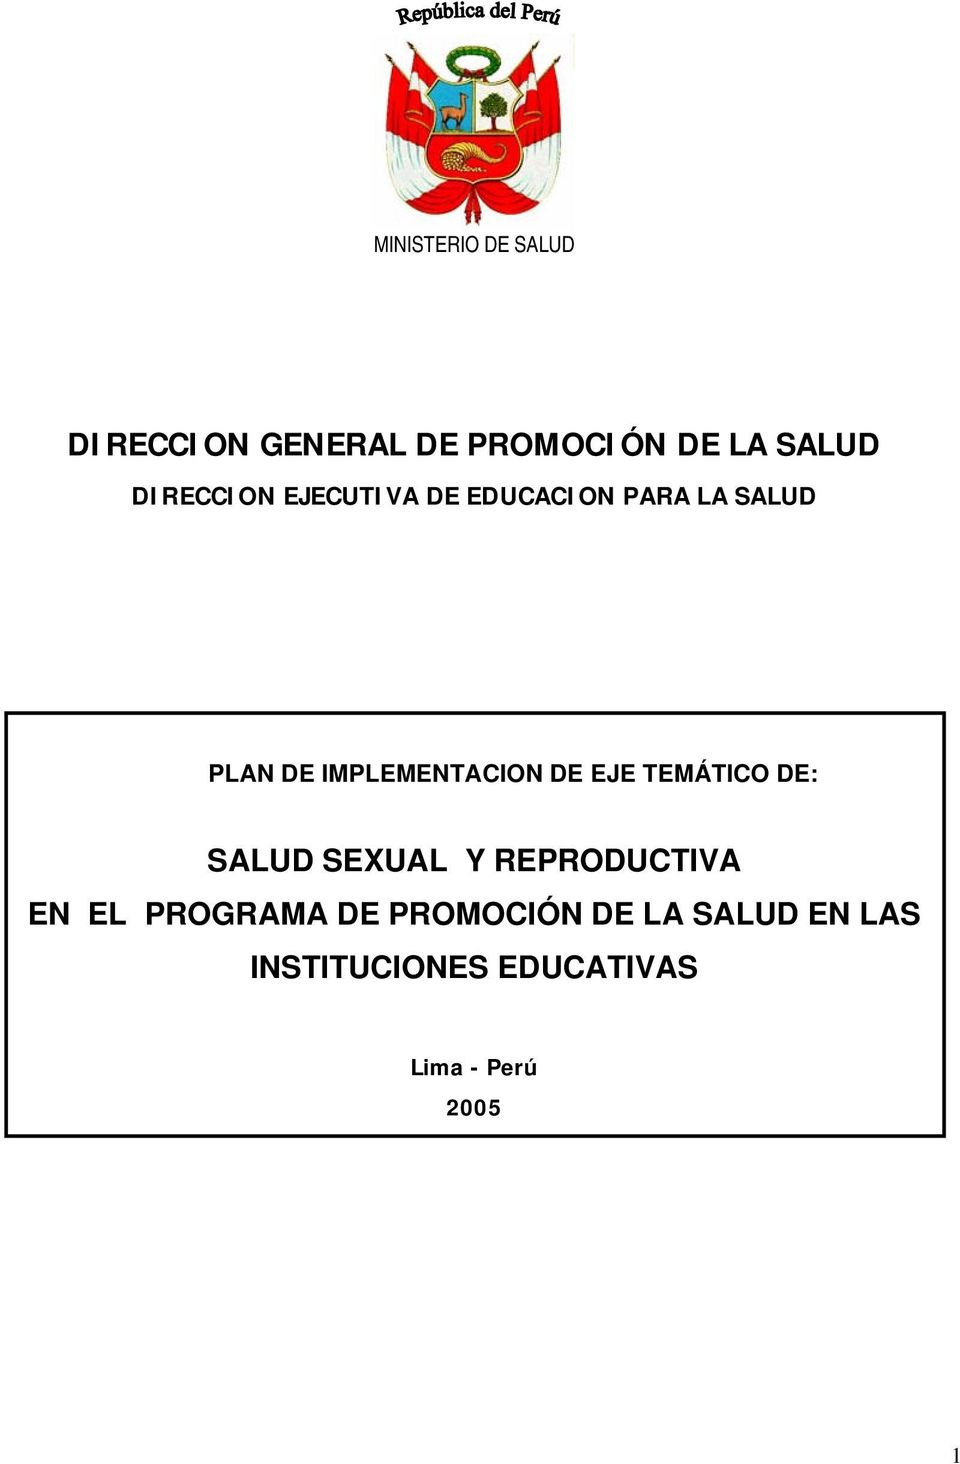 IMPLEMENTACION DE EJE TEMÁTICO DE: SALUD SEXUAL Y REPRODUCTIVA EN